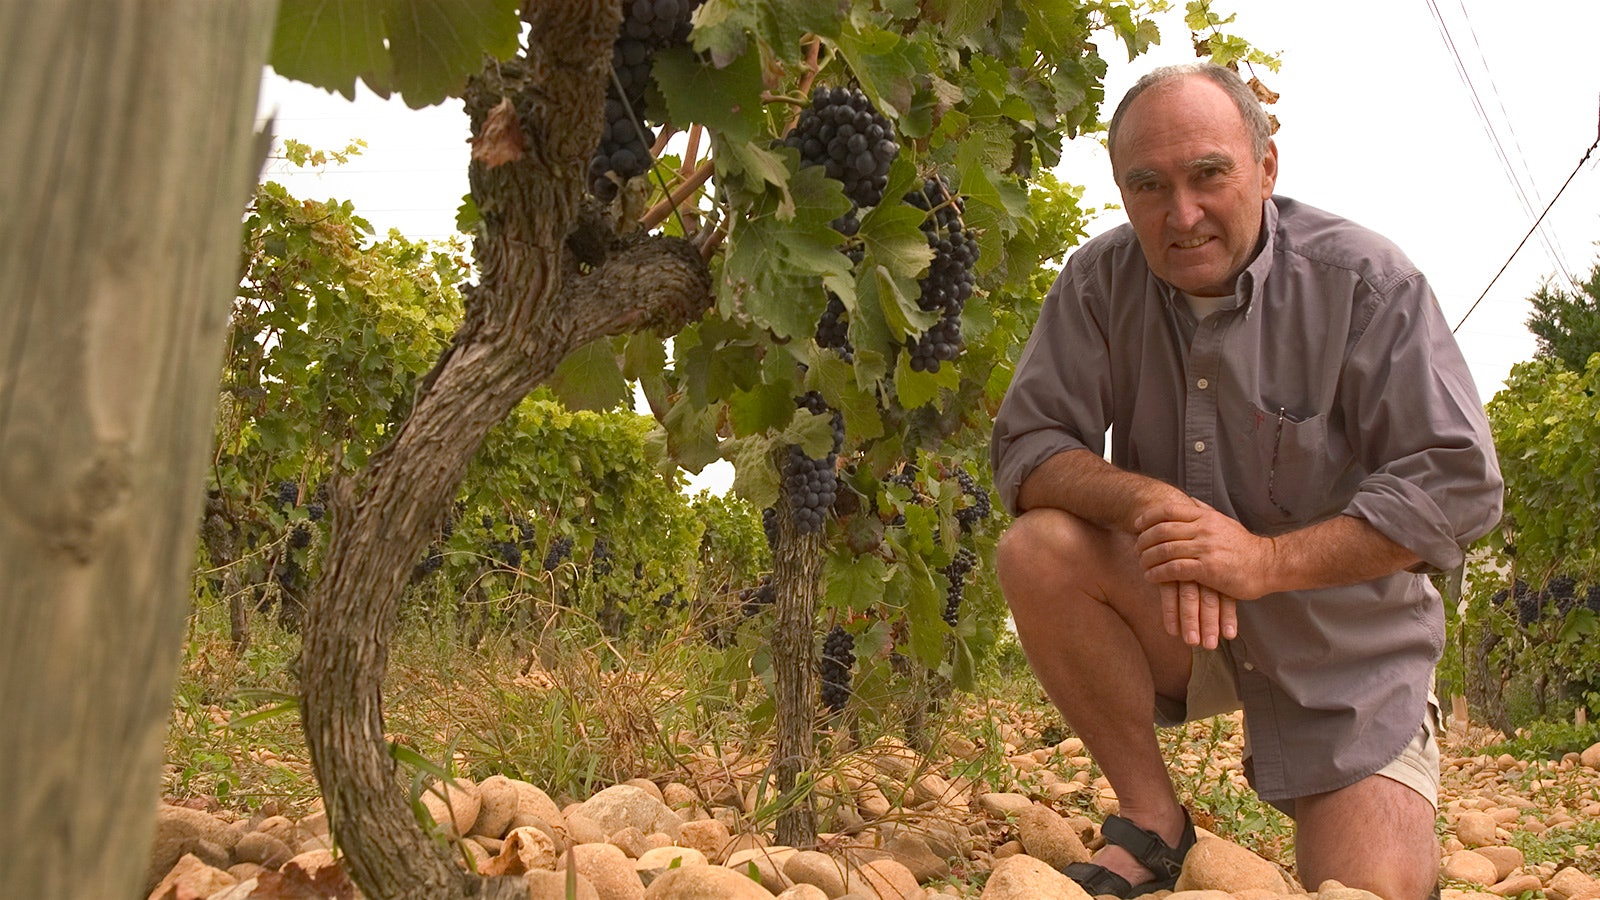  Alain Graillot encontró la grandeza de la vinificación en los suelos rocosos del norte del valle del Ródano.